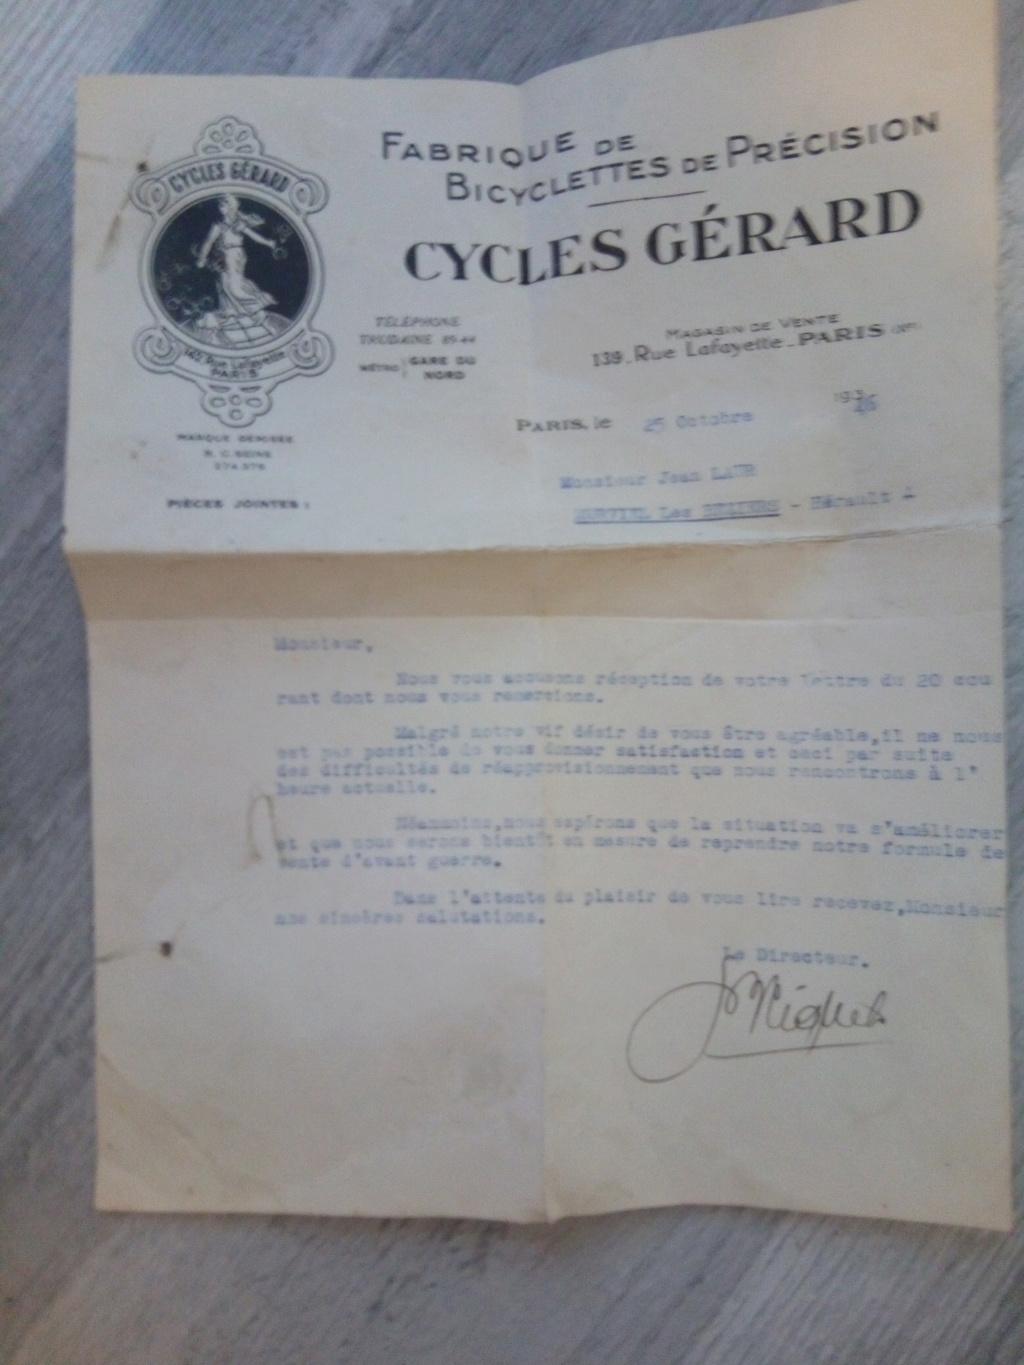 Bonjour a tous, je suis en possession de document commercial du fabricant de vélo Gérard datant de 1946 Img_2010